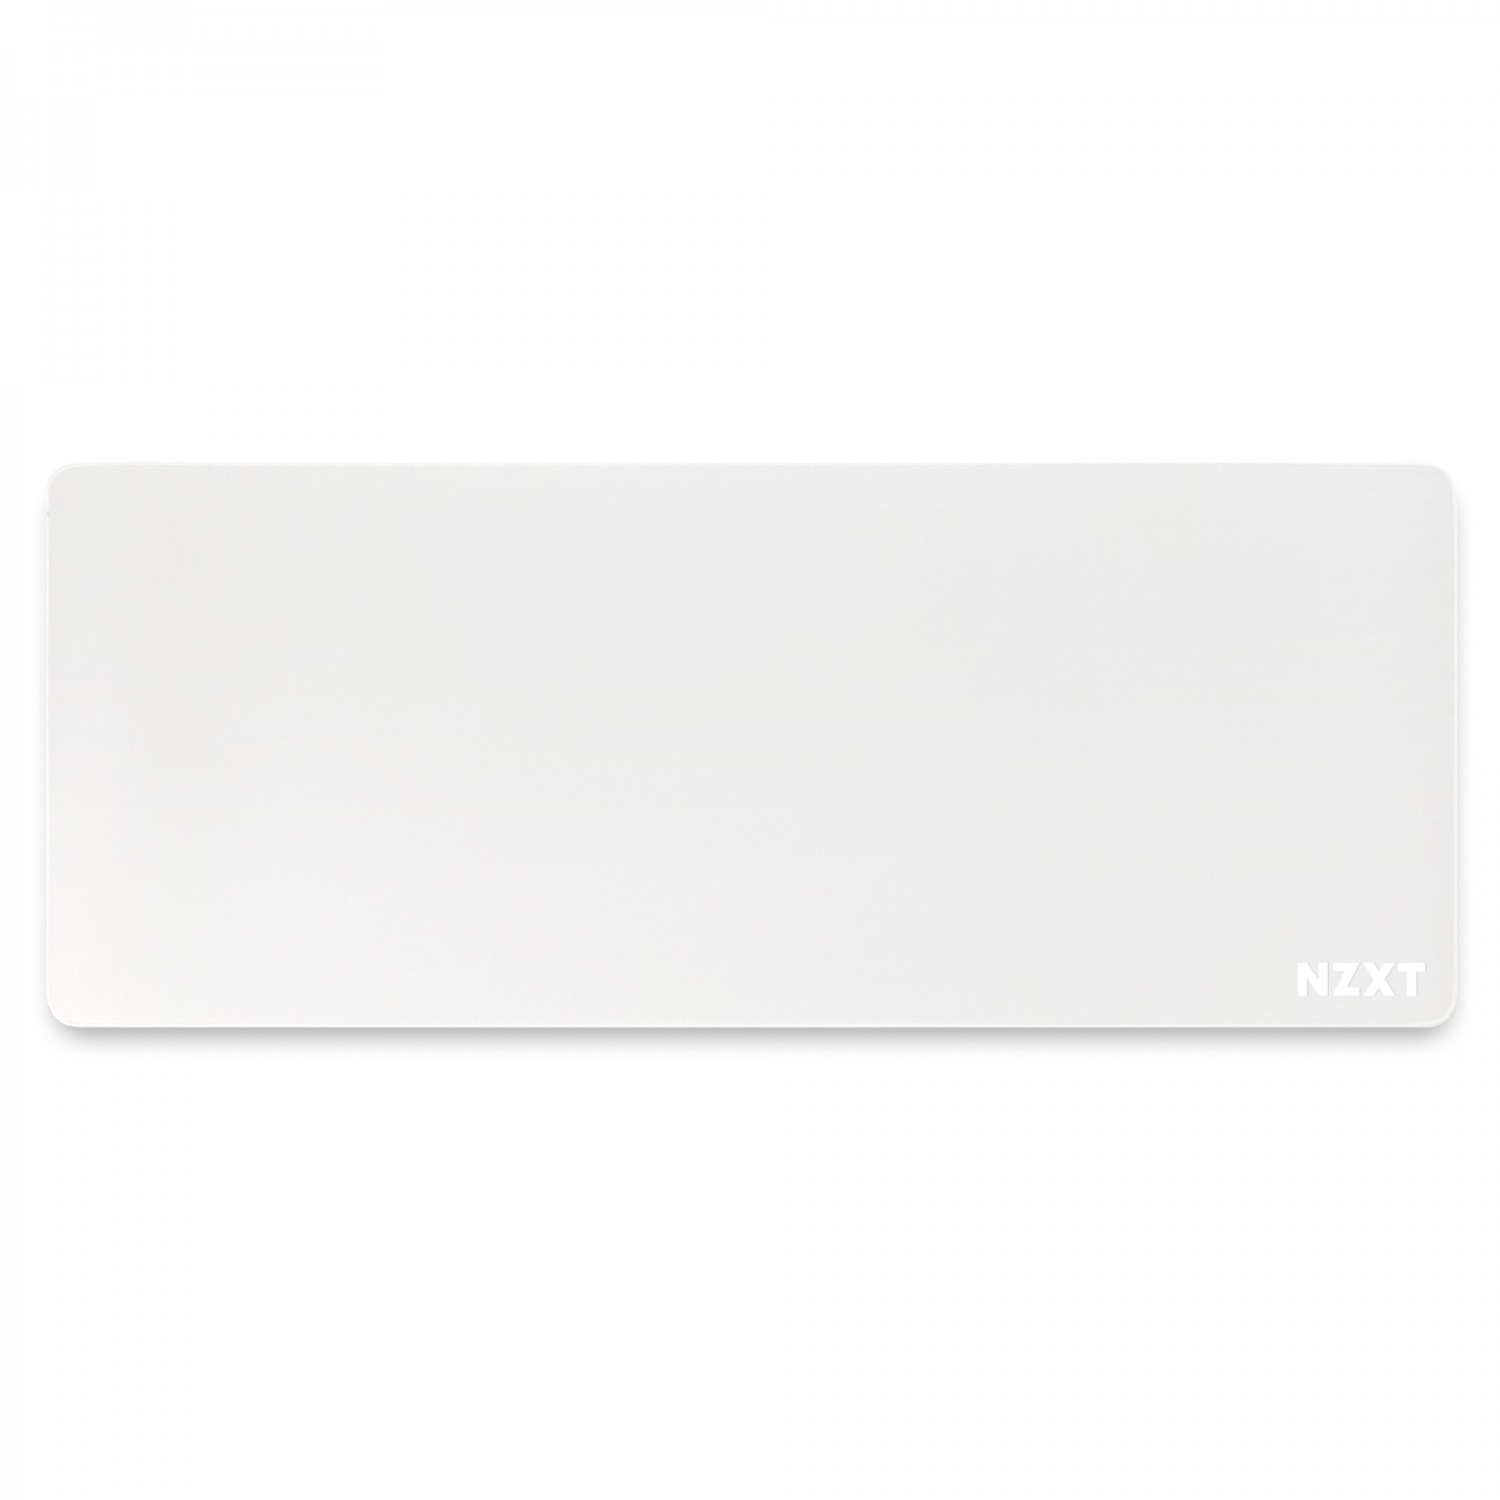 موس پد NZXT MXP700 - Matte White